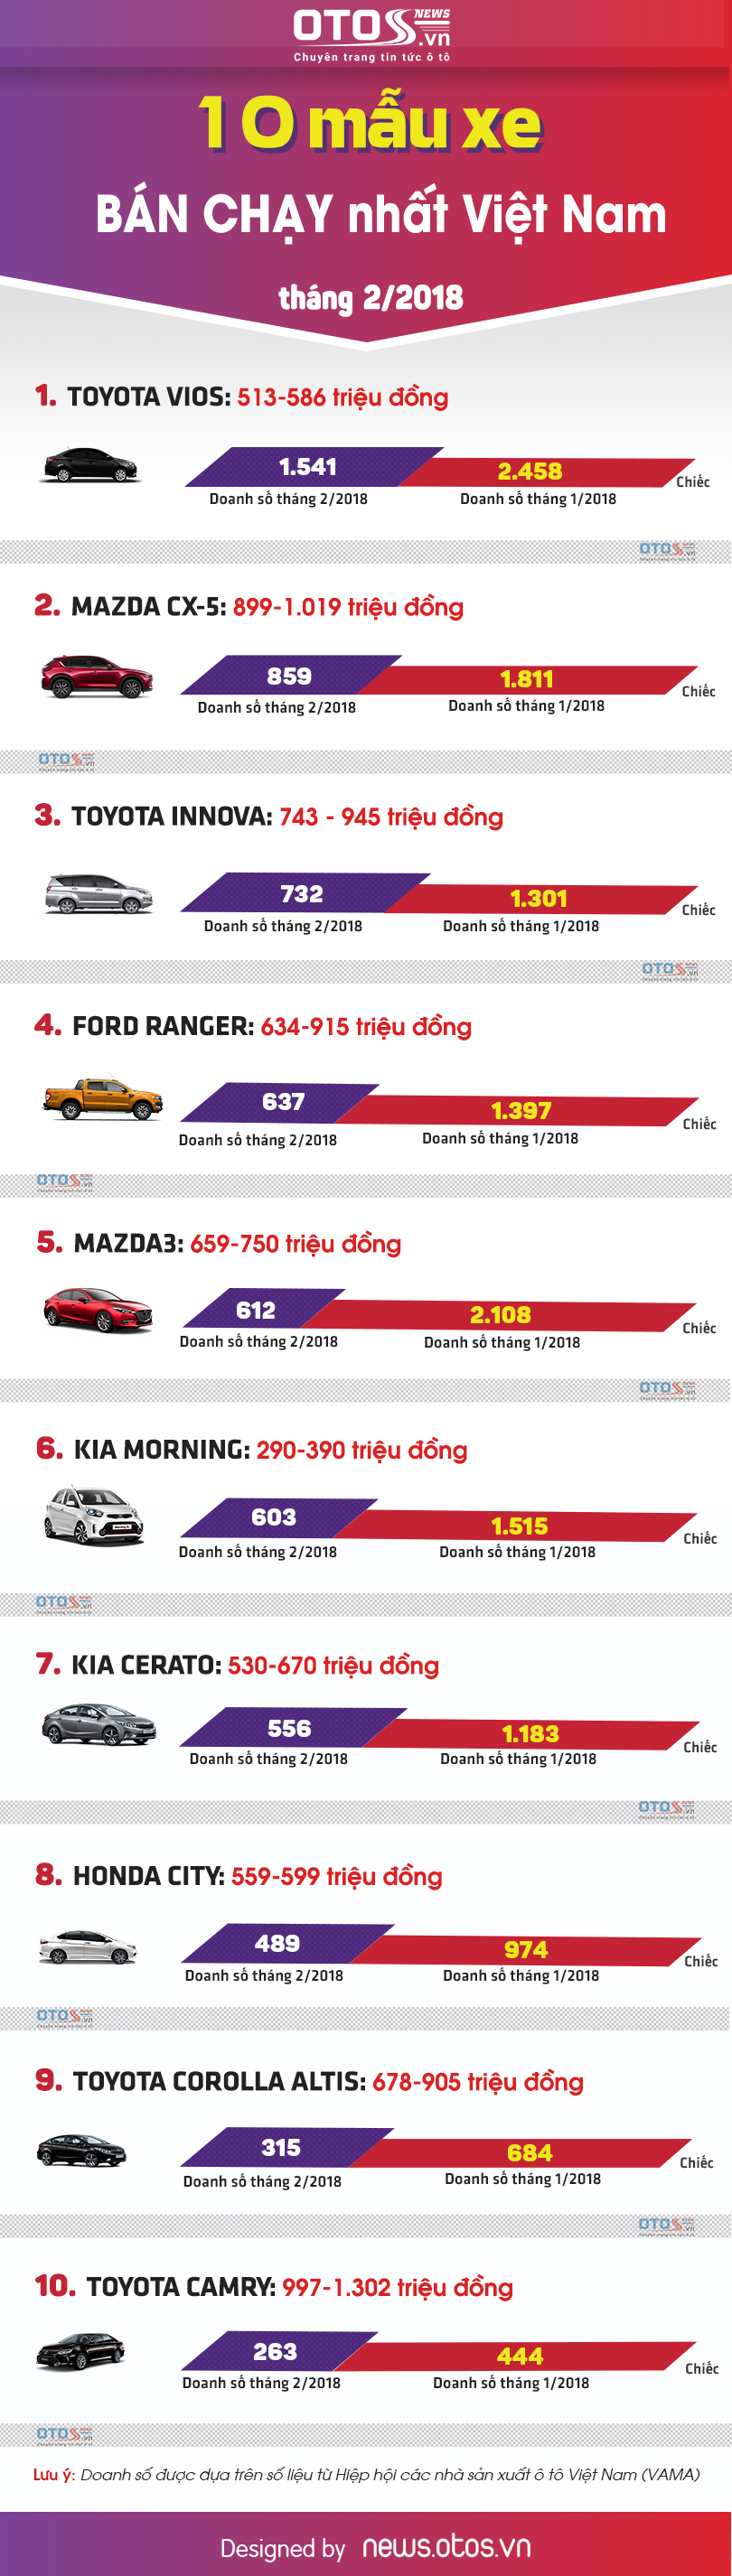 [Infographic] - 10 mẫu xe bán chạy nhất thị trường Việt tháng 2/2018